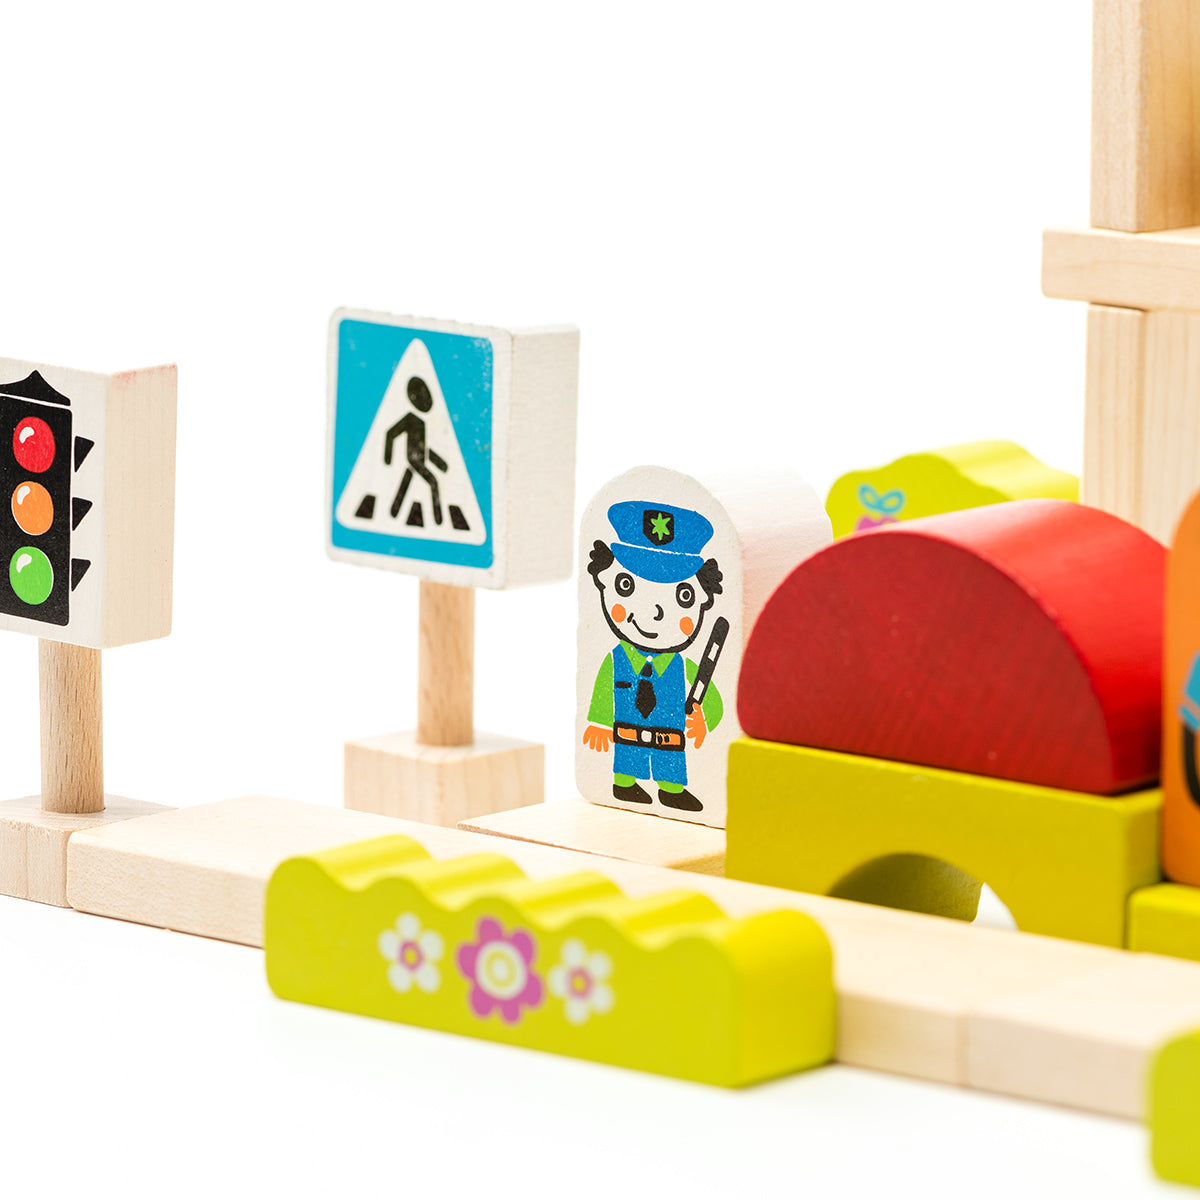 Holzklötzchen Baukasten Stadt Kinderspielzeug ab 3 Jahren - Spielzeug Opa